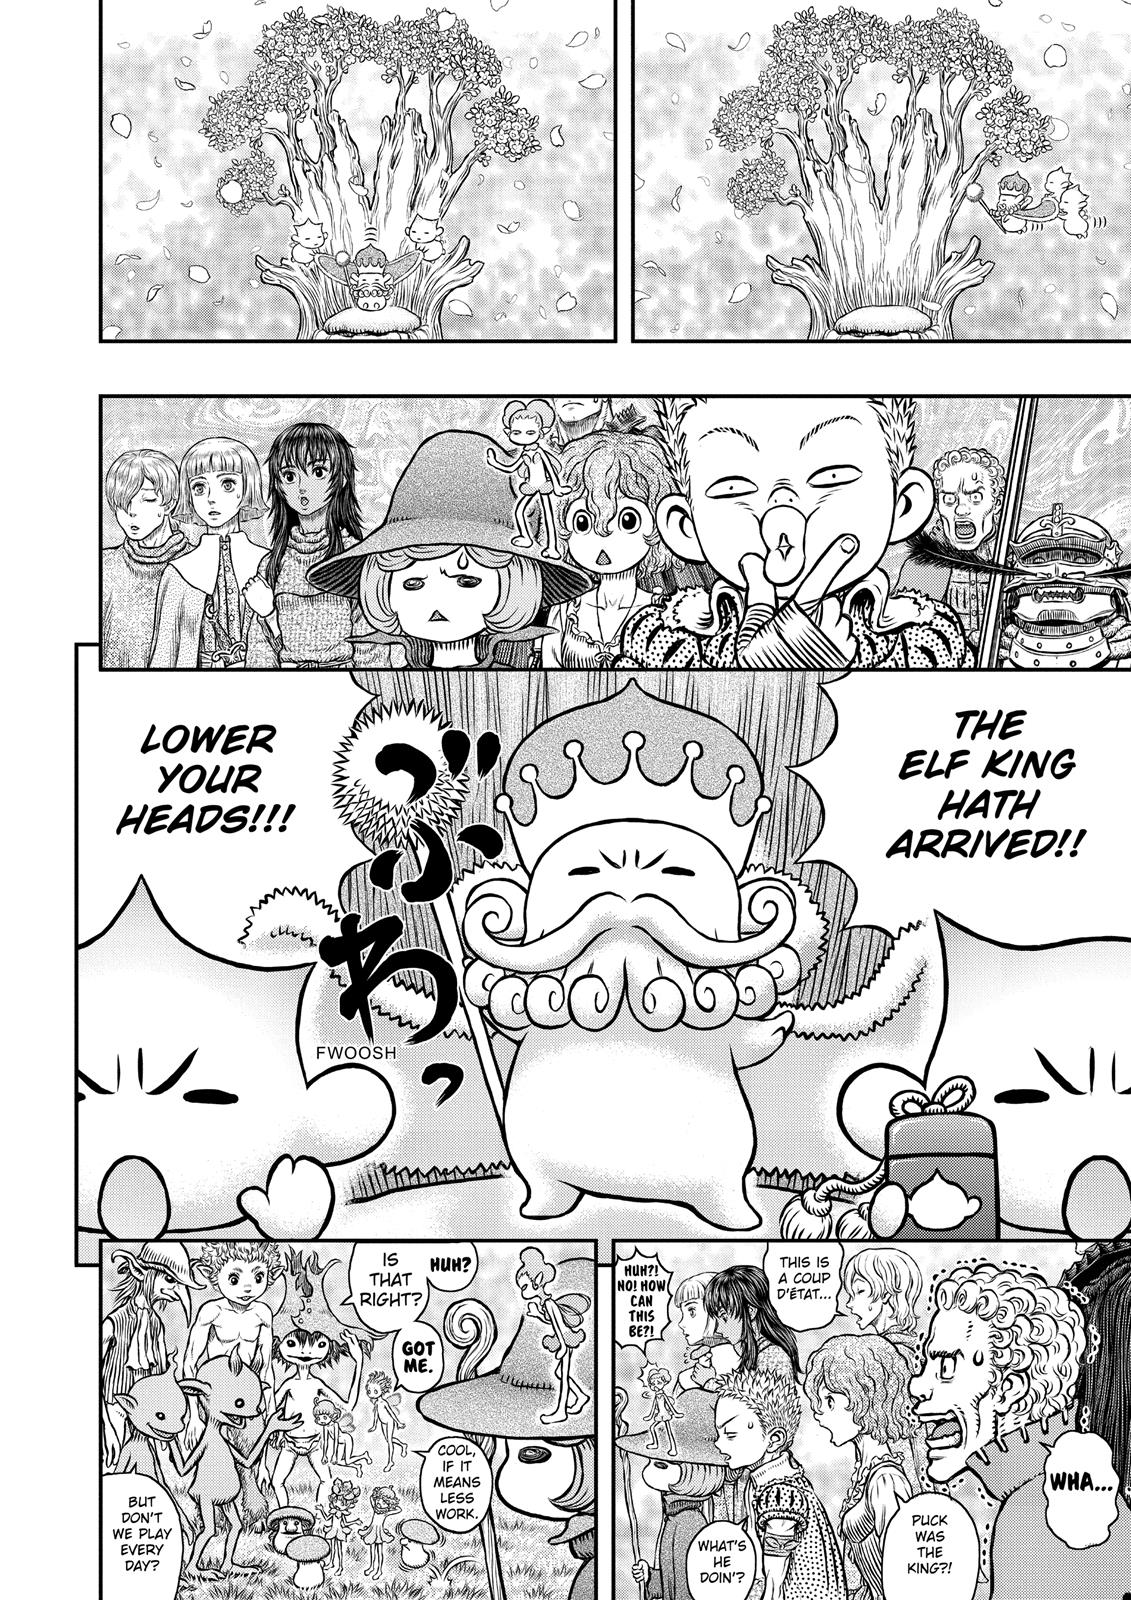 Berserk Manga Chapter 346 image 15